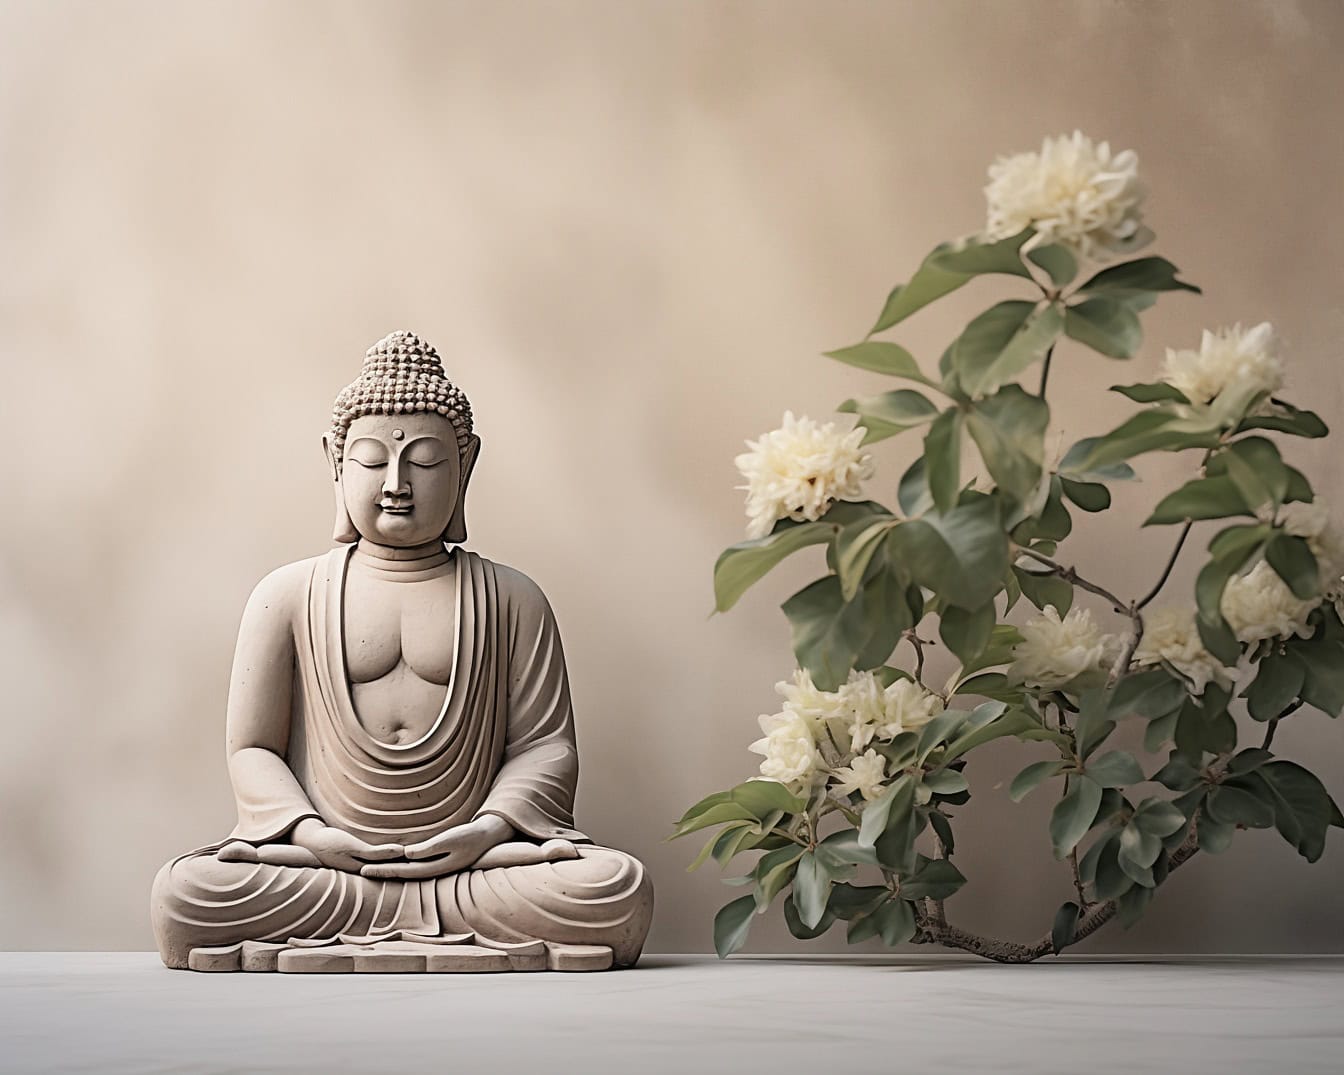 Buddha-szobor a transzcendentális zen meditációban, amely a meditációt spirituális filozófiaként ábrázolja